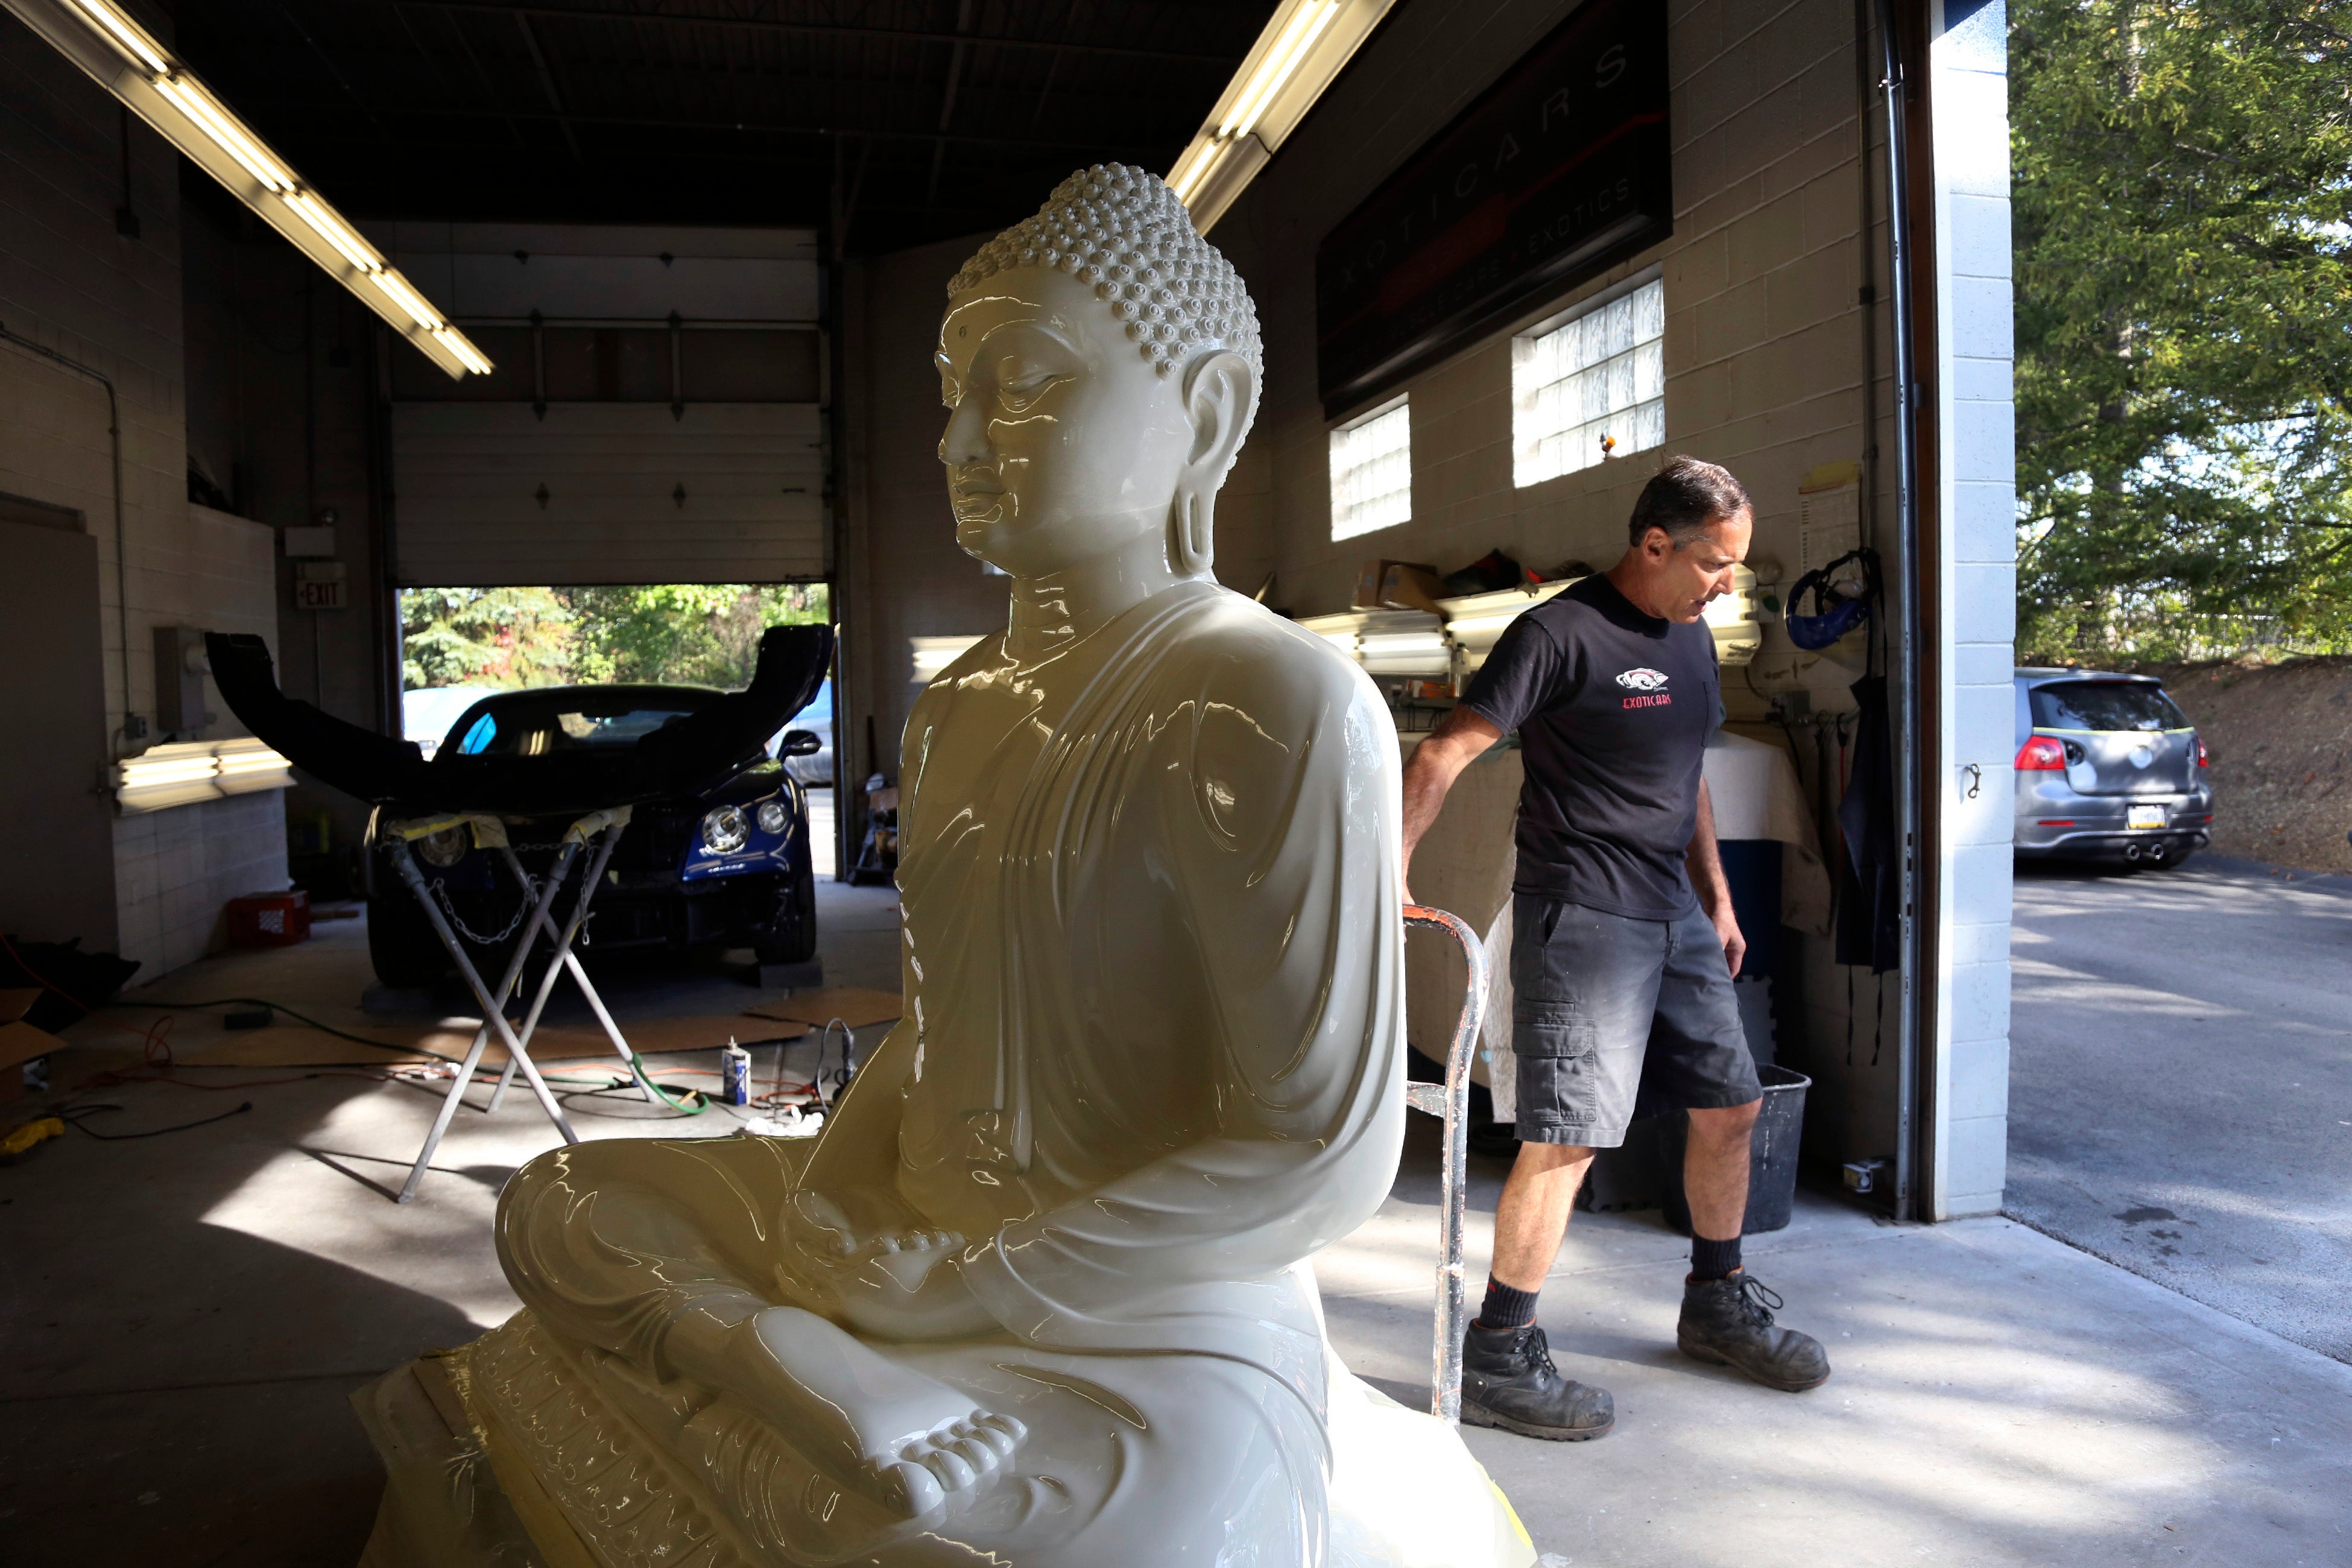 Auto Buddhismus Wackelkopf Ganesha Figur